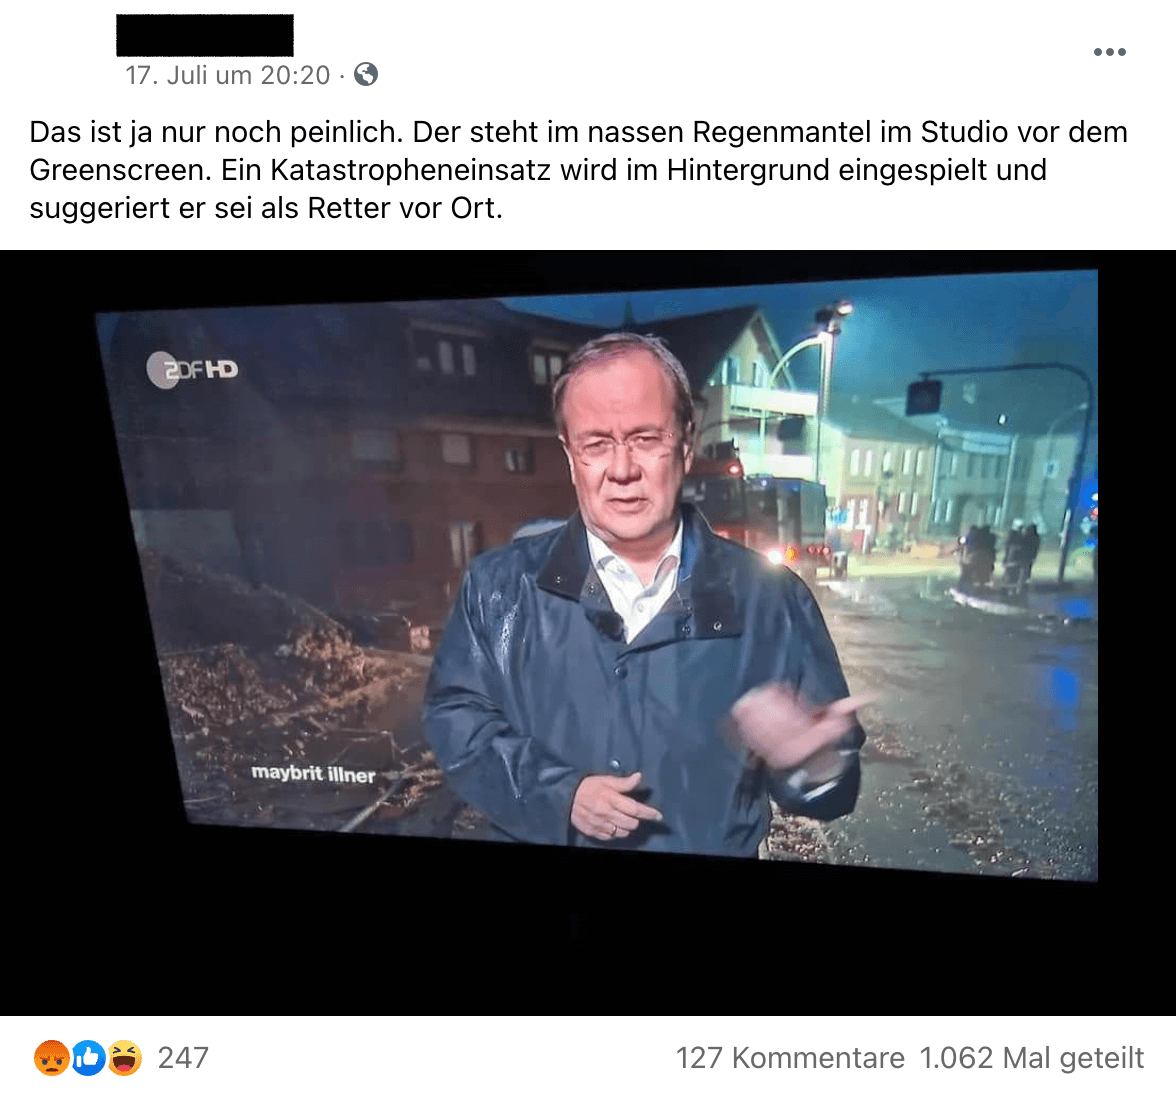 Auf Facebook und Twitter wird behauptet, Armin Laschet habe sich nicht in Stolberg befunden, als er in die Sendung „Maybrit Illner“ geschaltet wurde. Das ist falsch. 